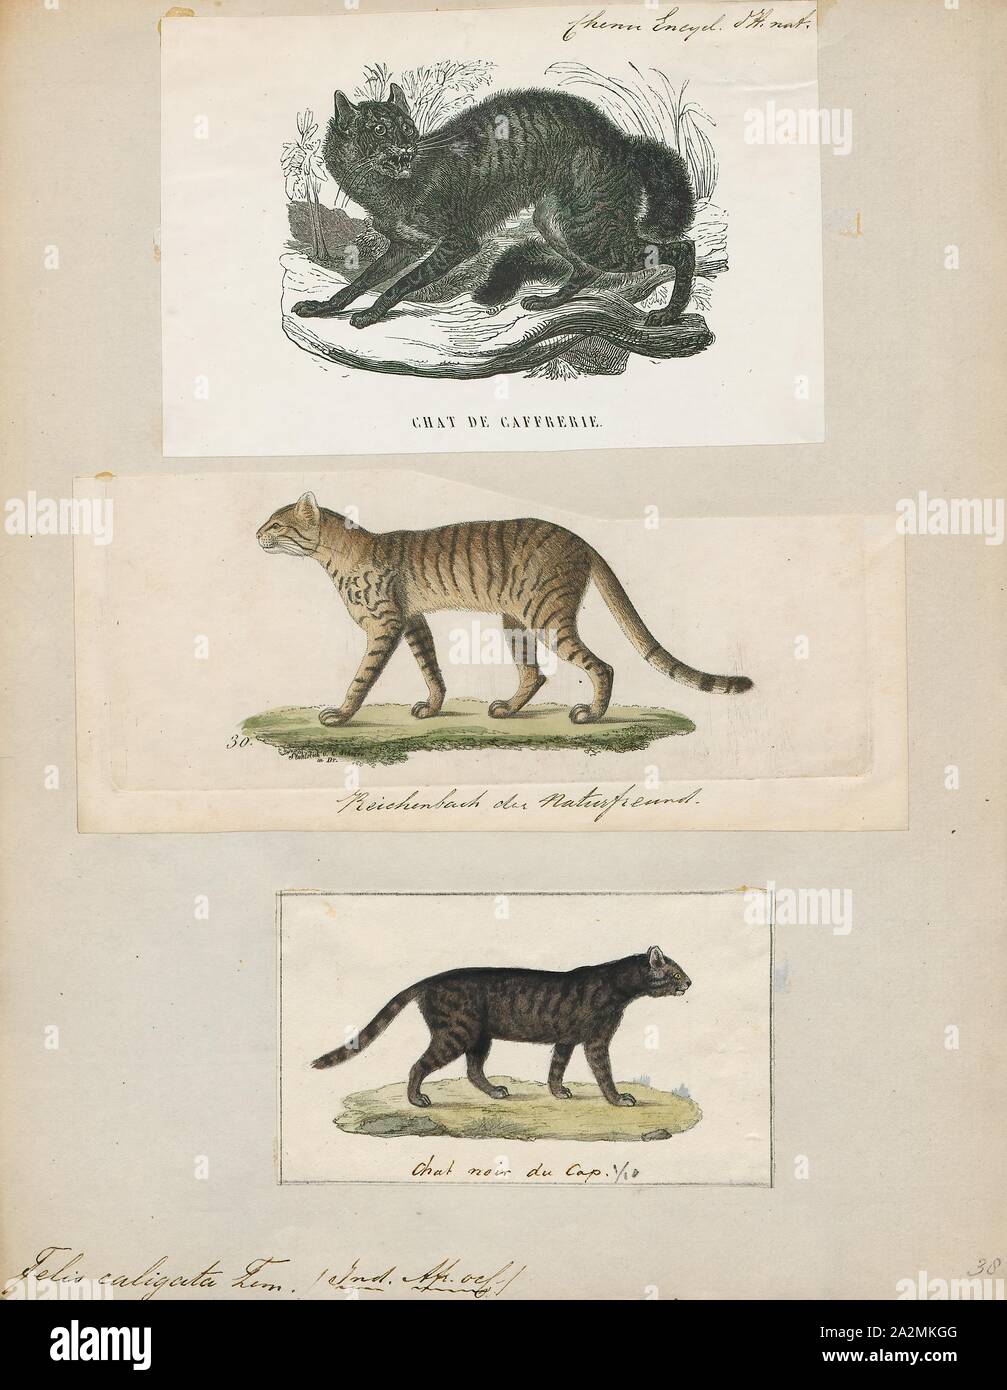 Felis caligata, Imprimer, Felis est un genre de petites et moyennes cat Felinae espèces indigènes de la plus grande partie de l'Afrique et au sud de 60° de latitude dans l'Europe et l'Asie à l'Indochine. Le genre comprend le chat domestique. La plus petite espèce felis est le chat à pieds noirs avec une tête et la longueur du corps de 38 à 42 cm (15 à 17). Le plus grand est le chat de jungle avec une tête et la longueur du corps de 62 à 76 cm (24 à 30). En 1700-1880, Banque D'Images